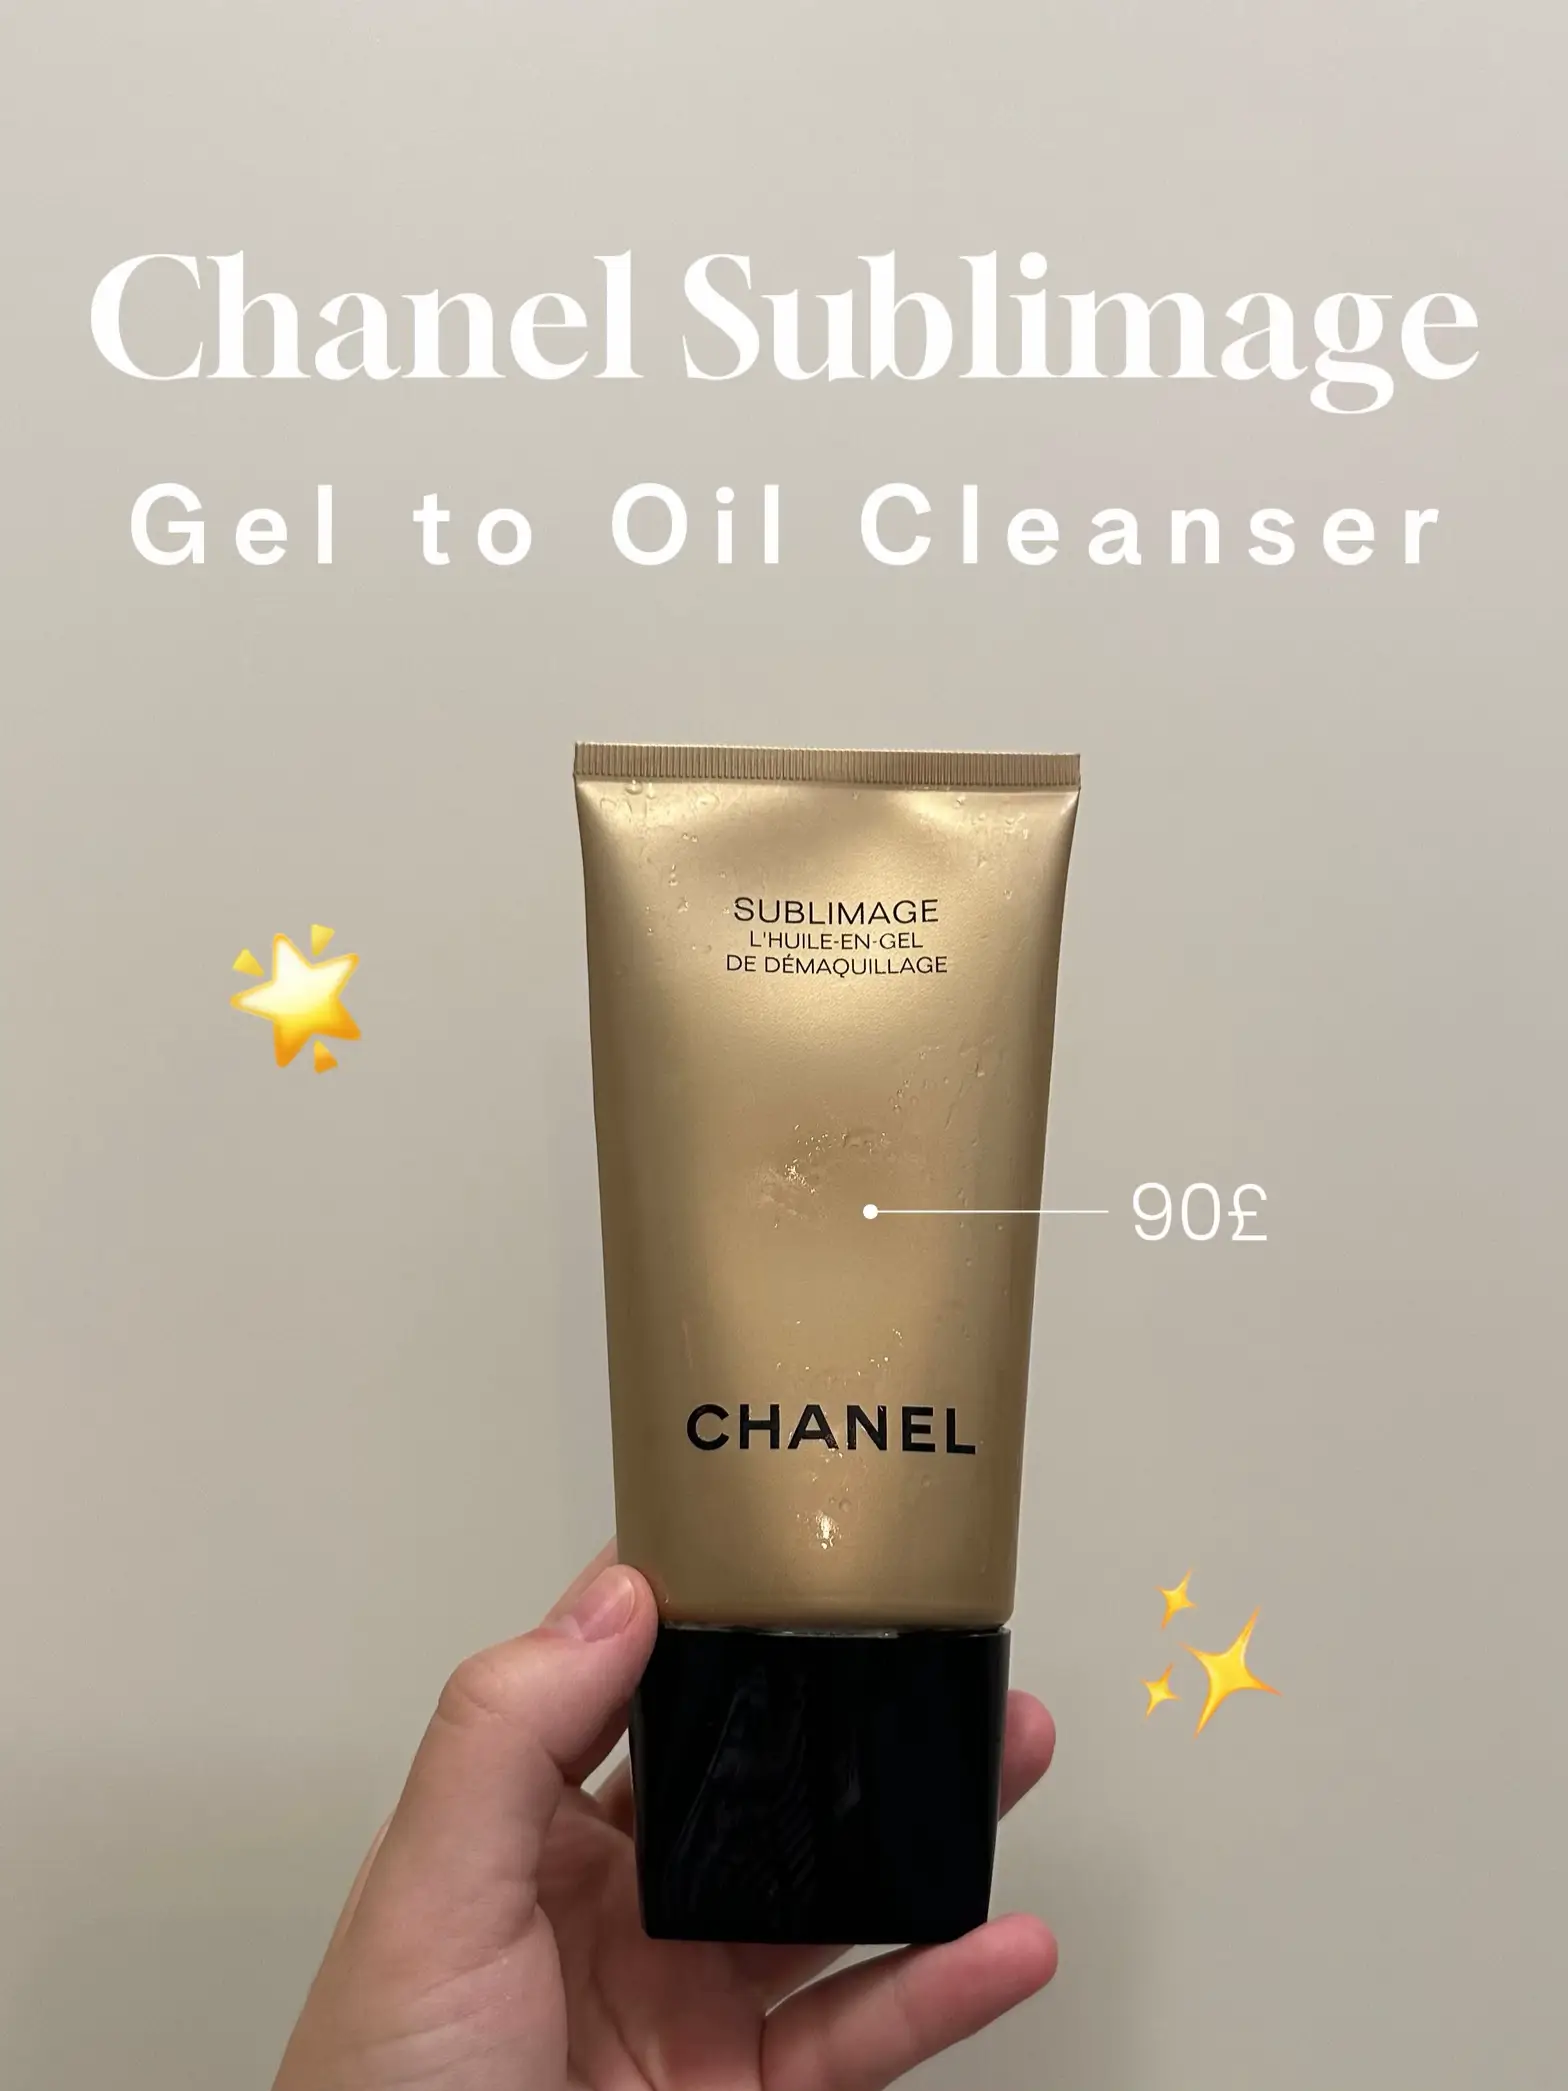 Chanel Sublimage Le Fluide ingredients (Explained)